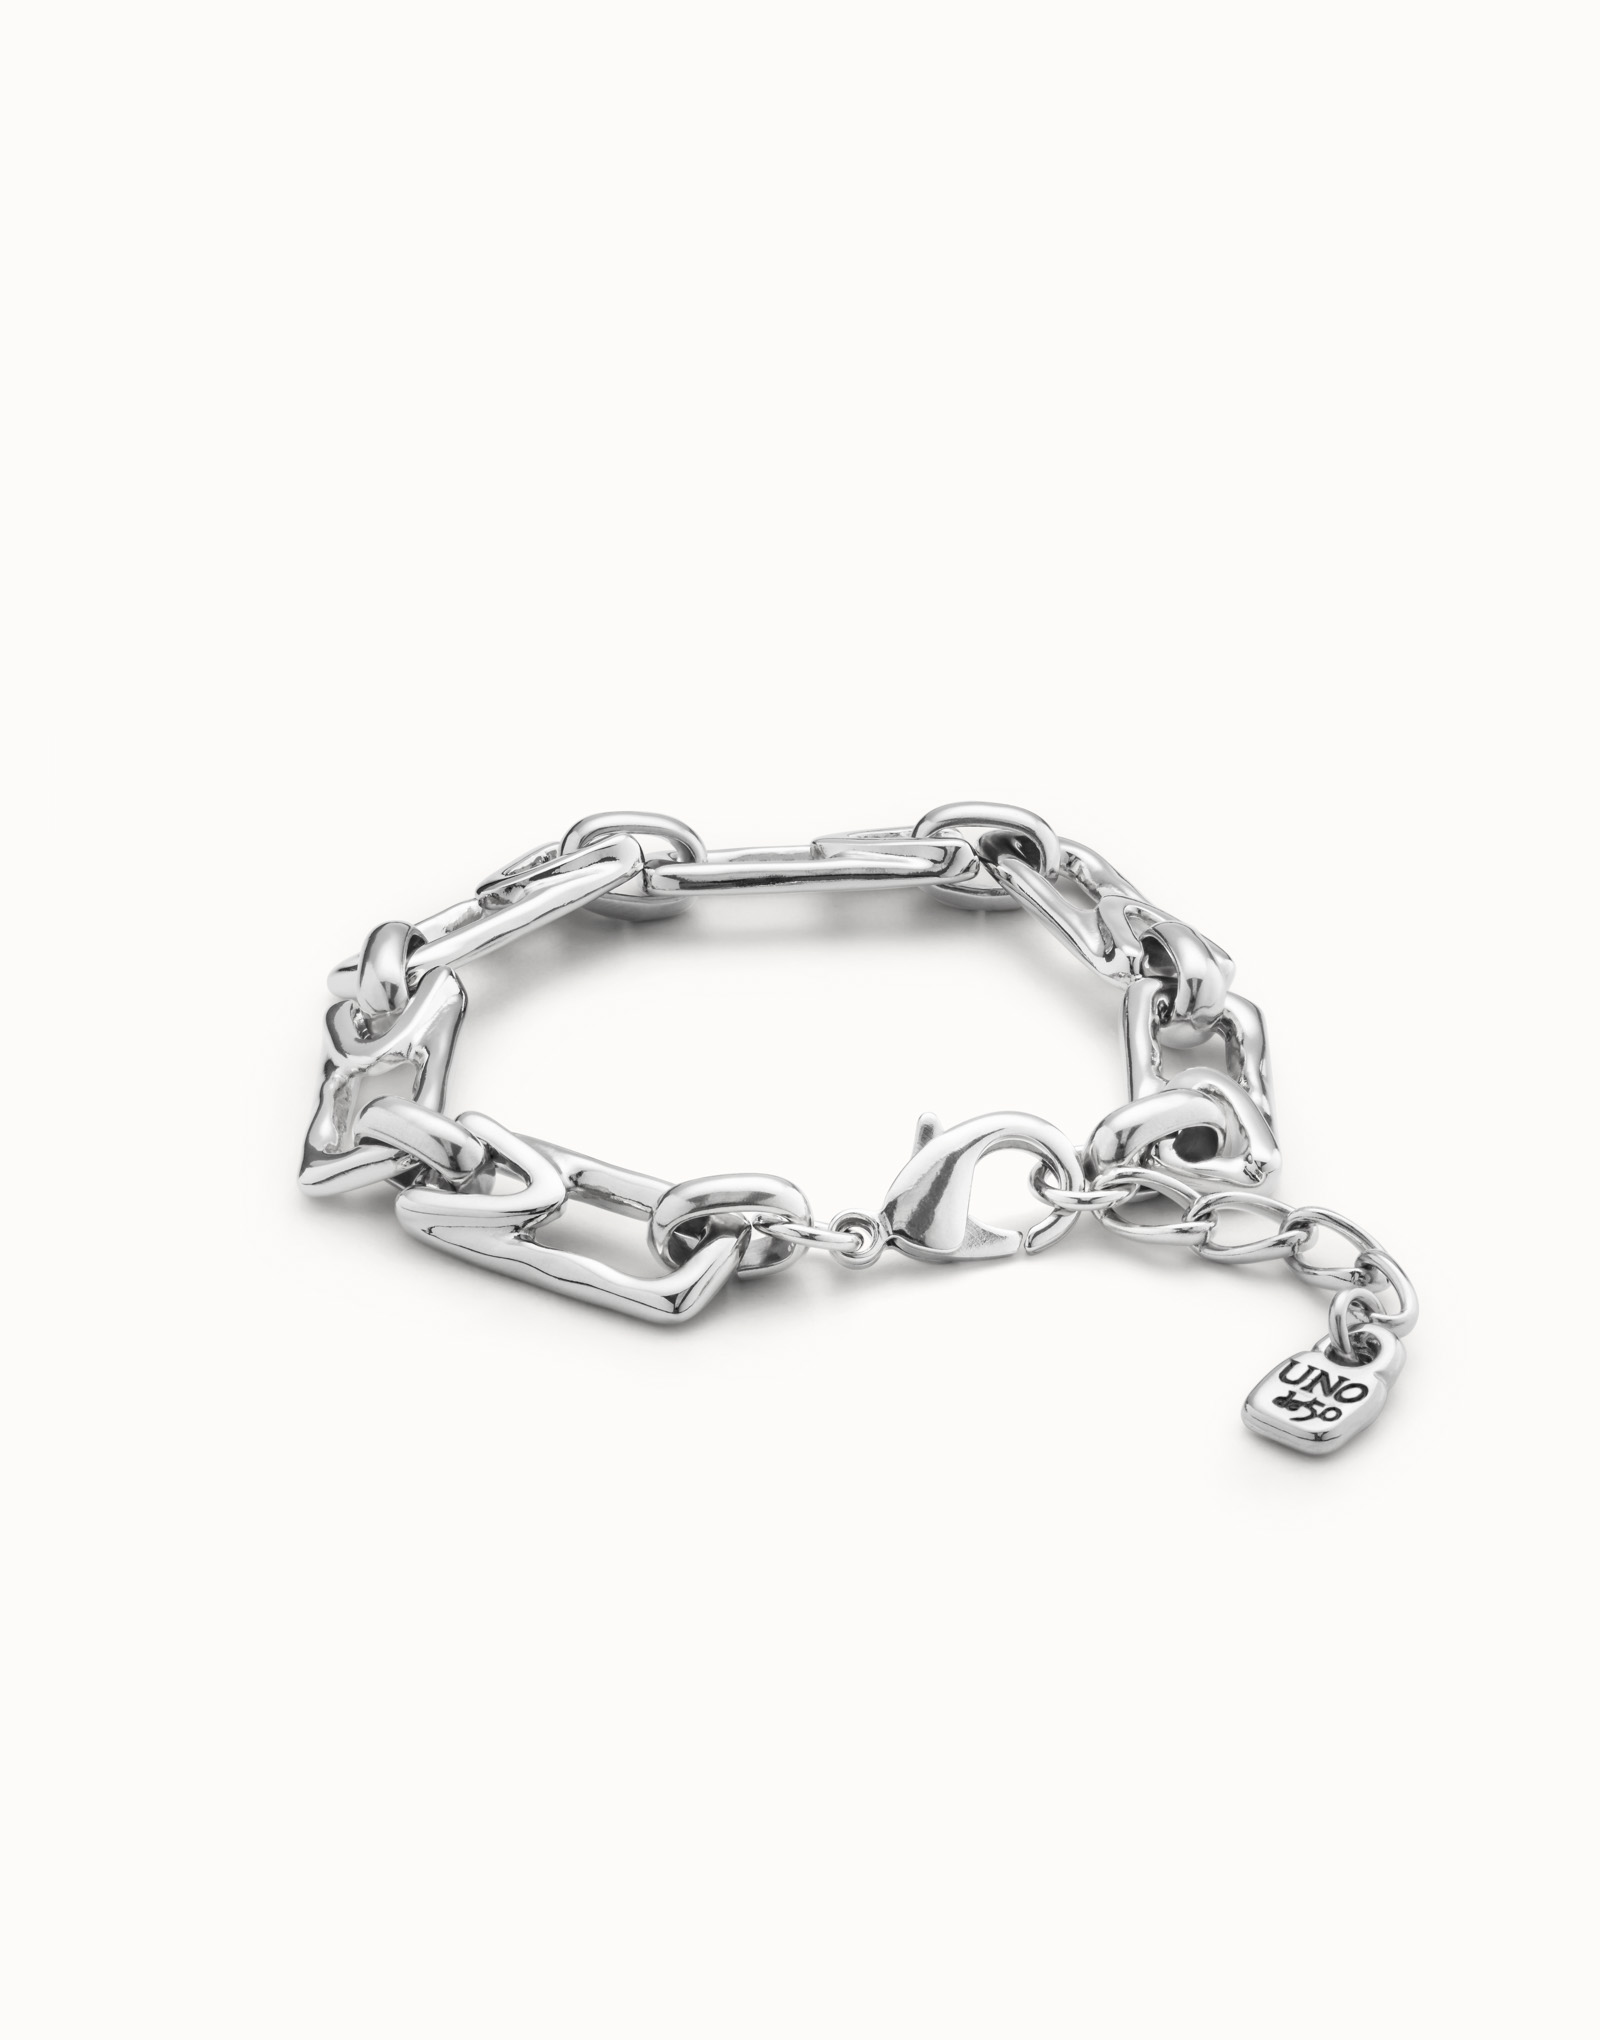 Bracelets under $95